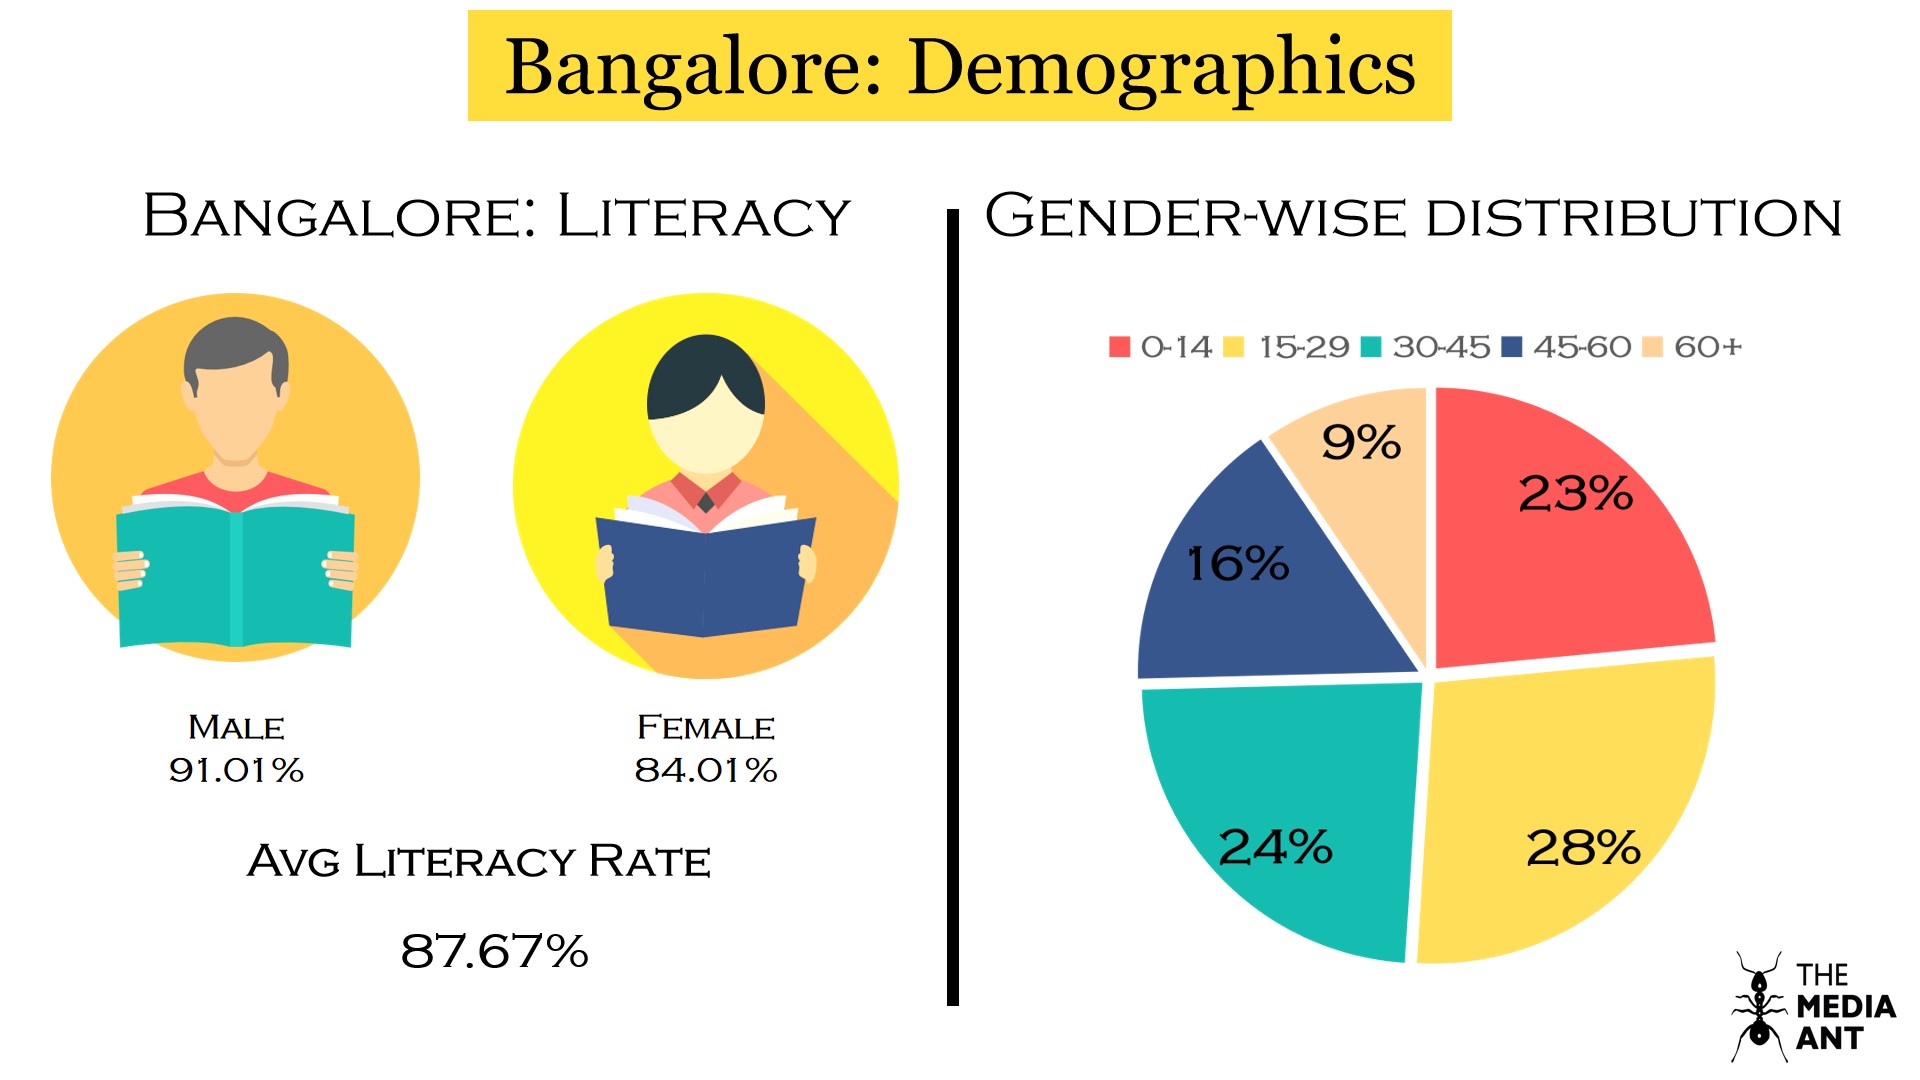 Bangalore literacy rate